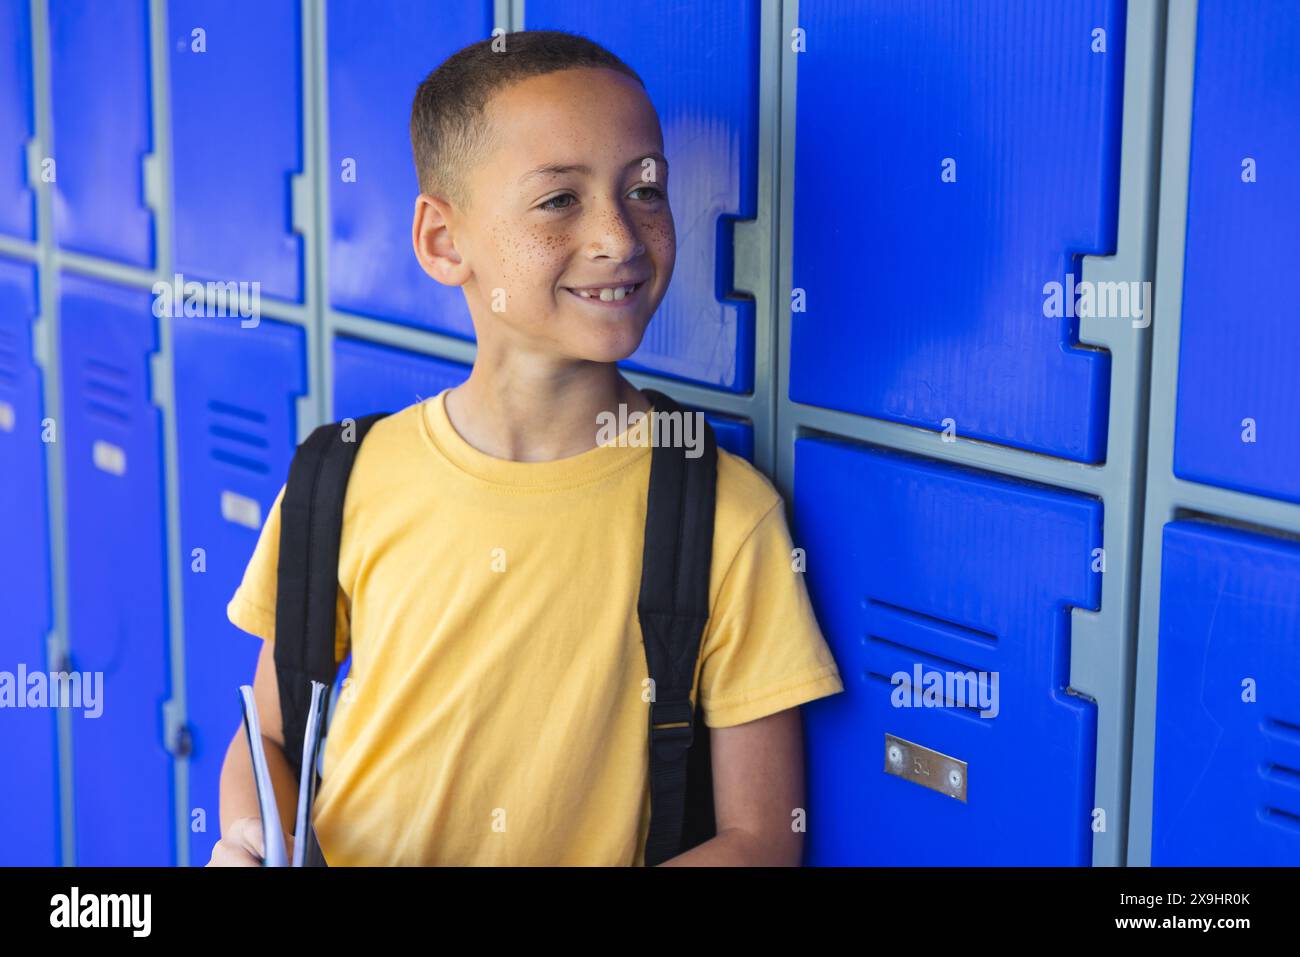 Il ragazzo birazziale sta accanto agli armadietti blu a scuola Foto Stock